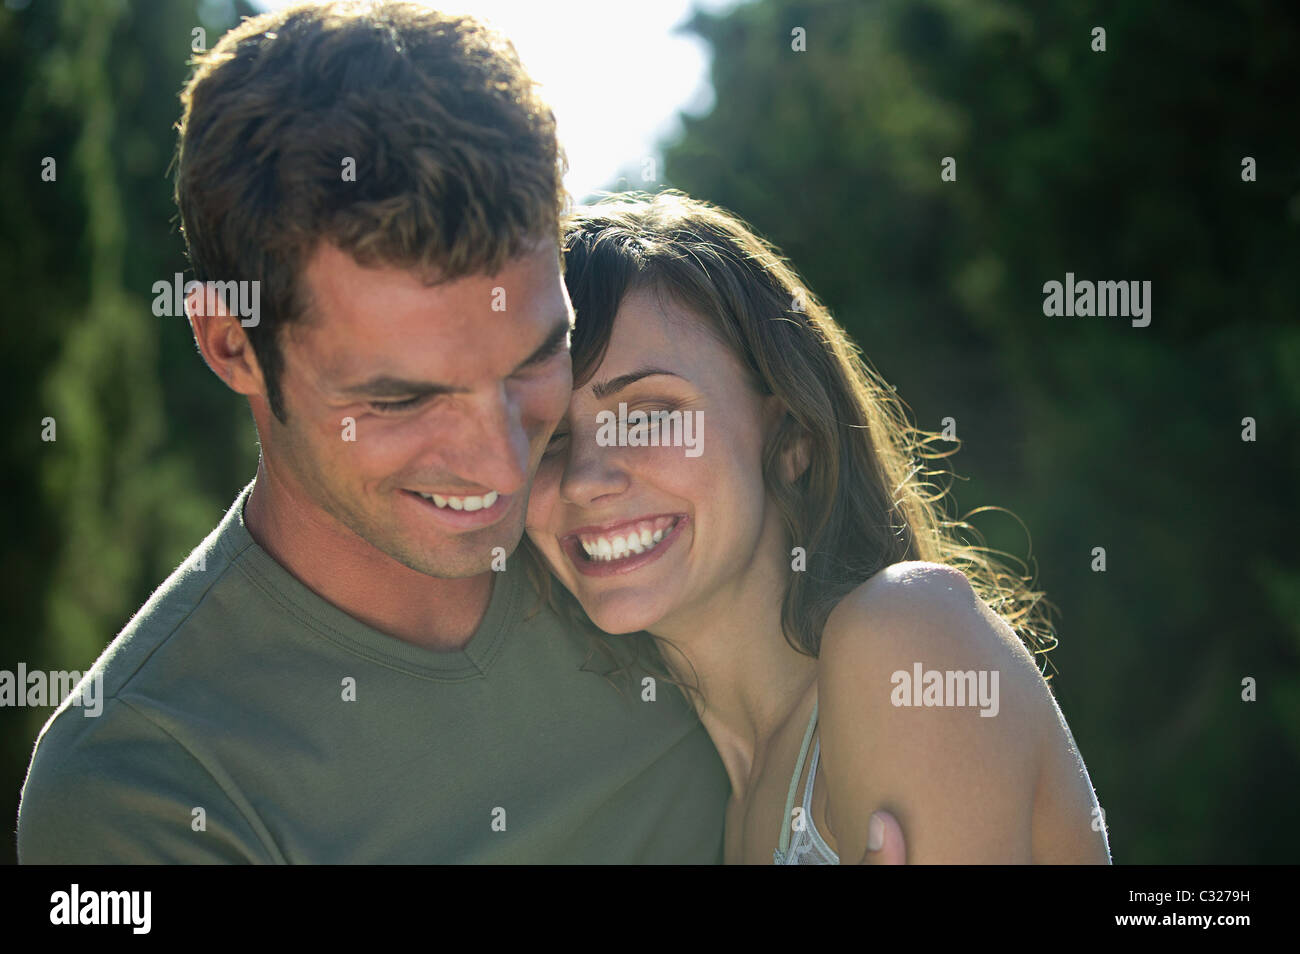 Happy couple outdoors Stock Photo